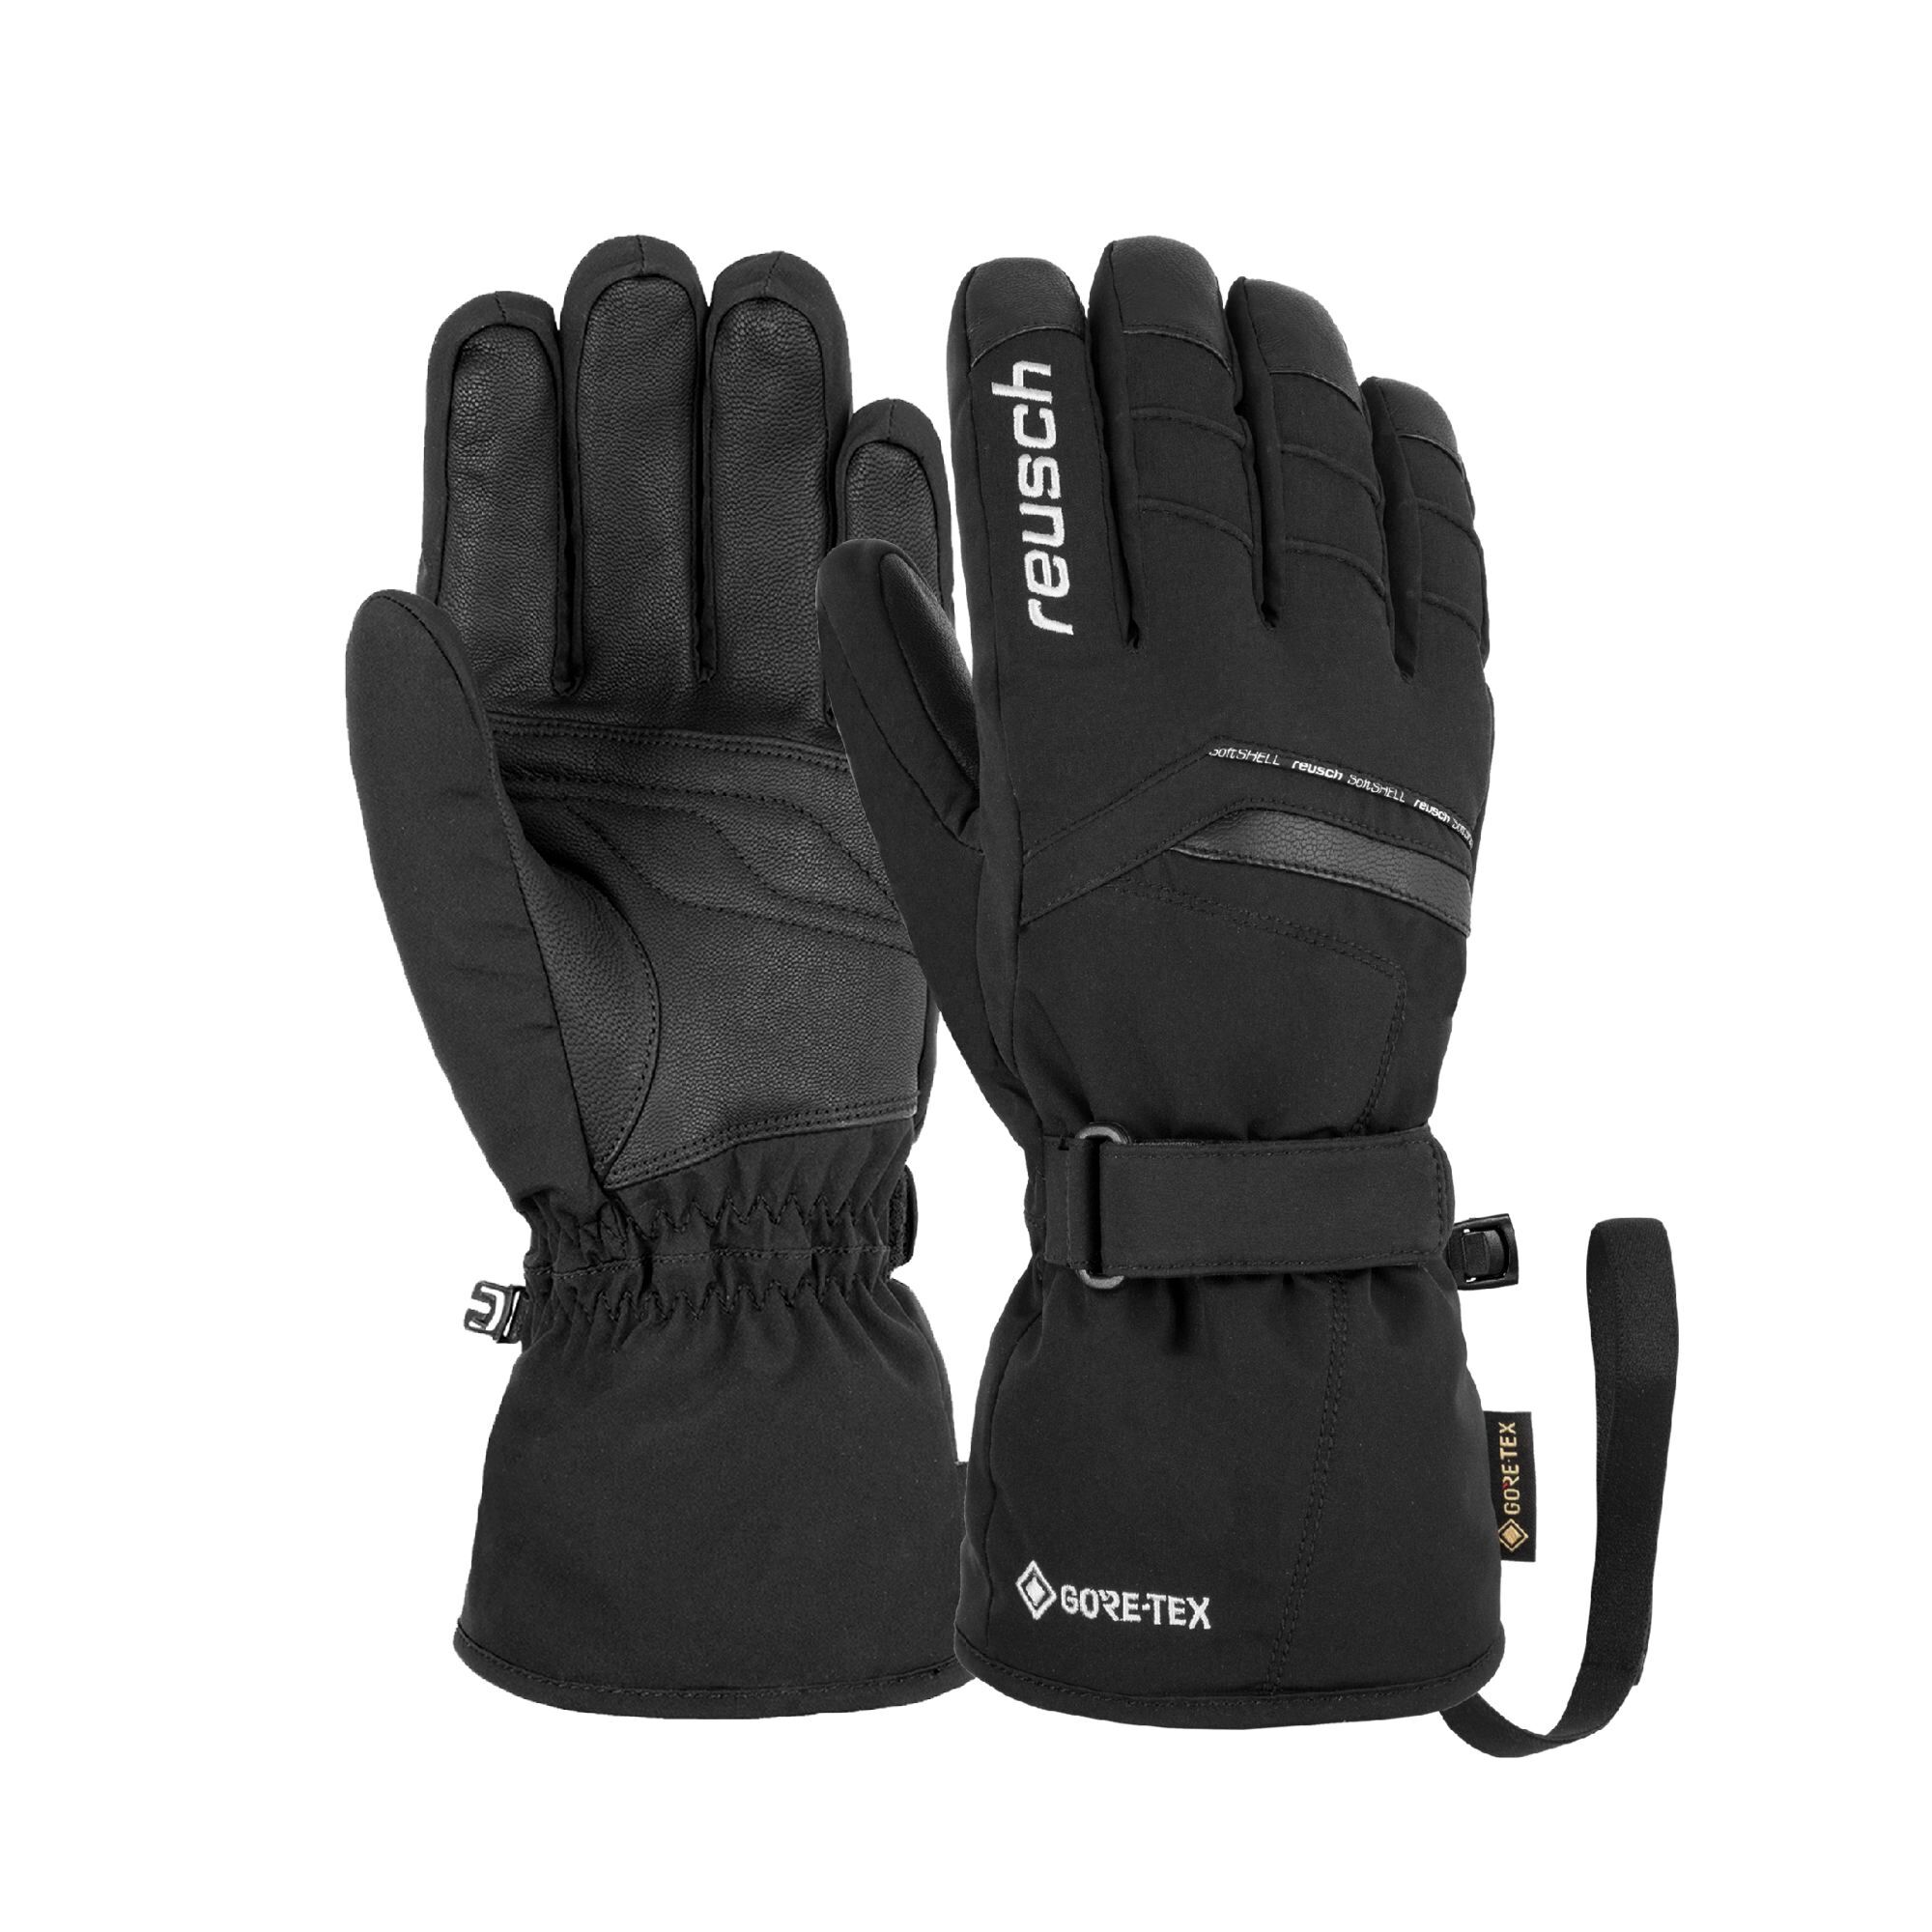 Reusch Manni GTX - Ski gloves - Men's